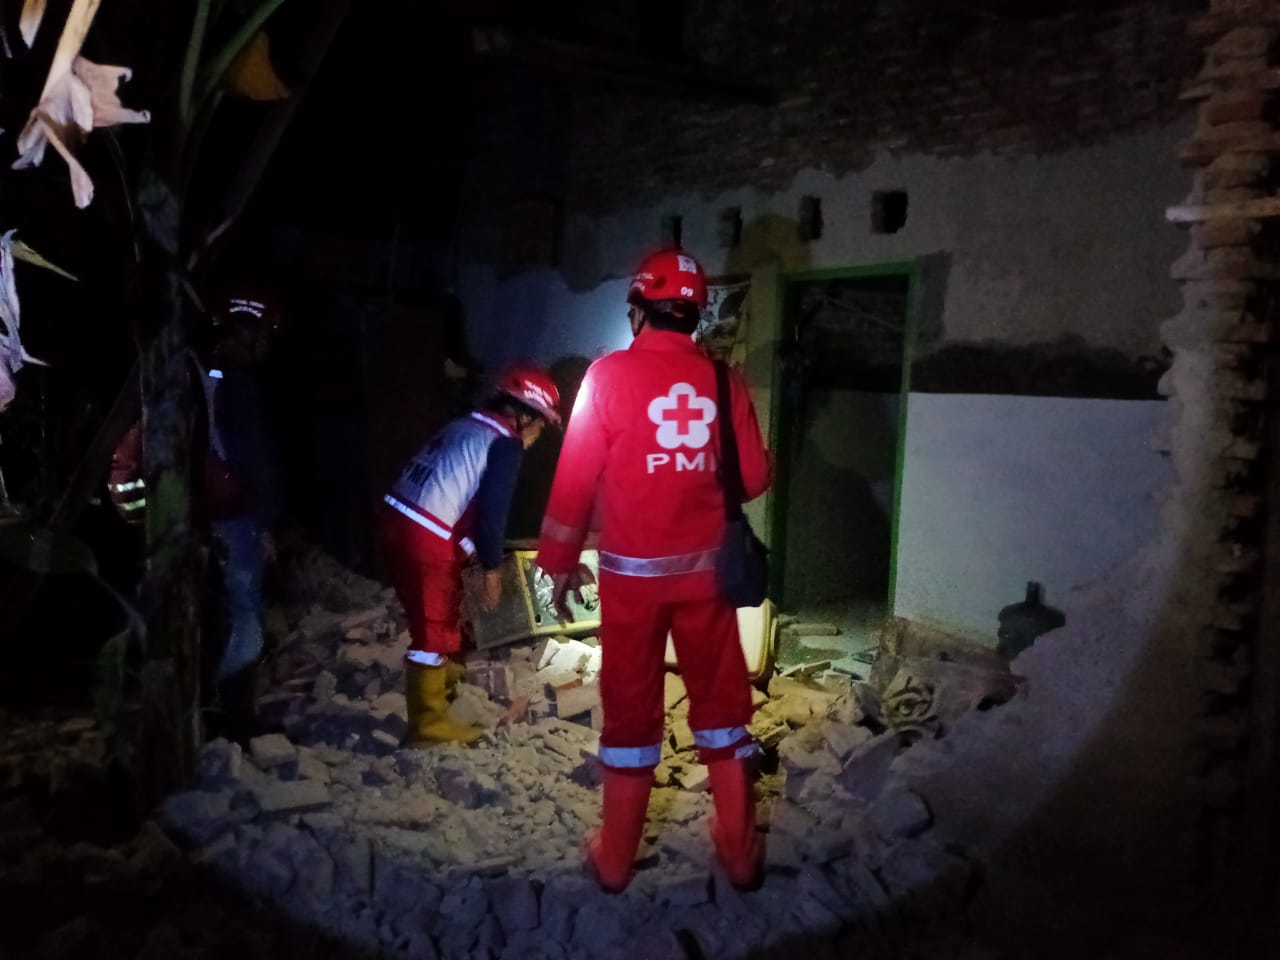 Malam-malam Rumah Warga di Tegal Roboh, Penguninya yang Masih Anak-anak Nyaris Tertimpa Reruntuhan